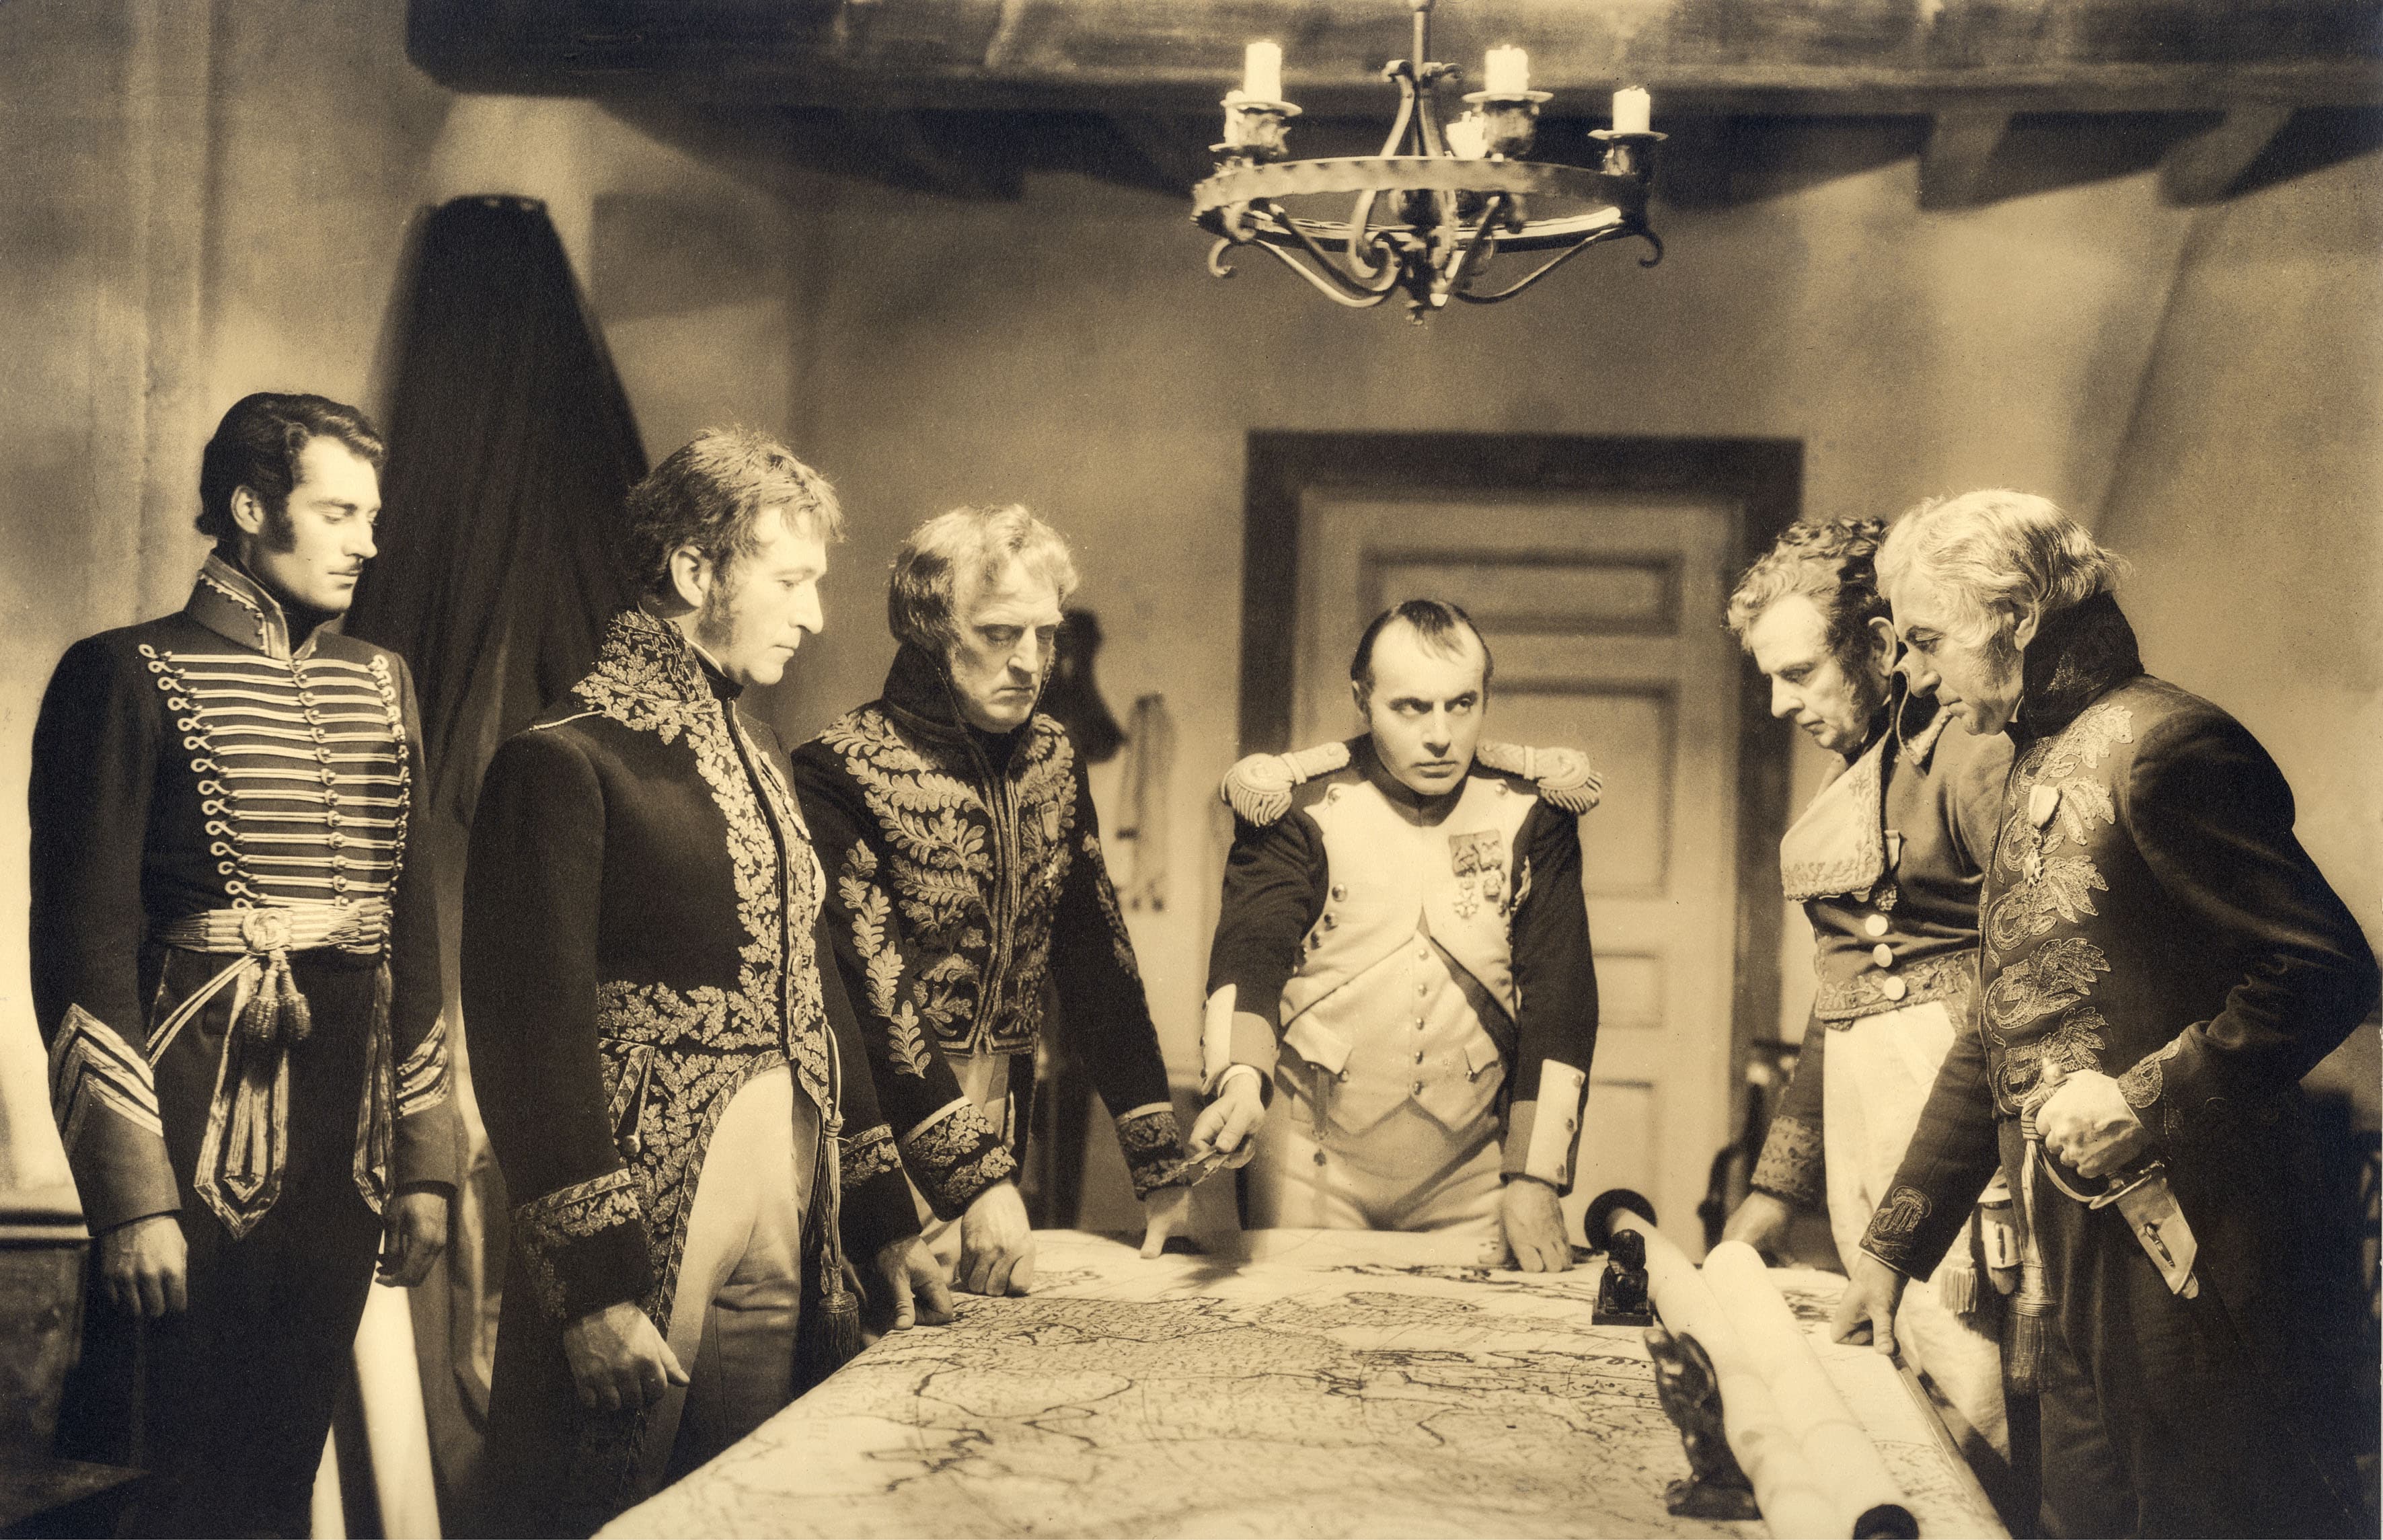 Una scena del film "Maria Walewska" del 1937. Al centro, nei panni di Napoleone, l'attore francese Charles Boyer